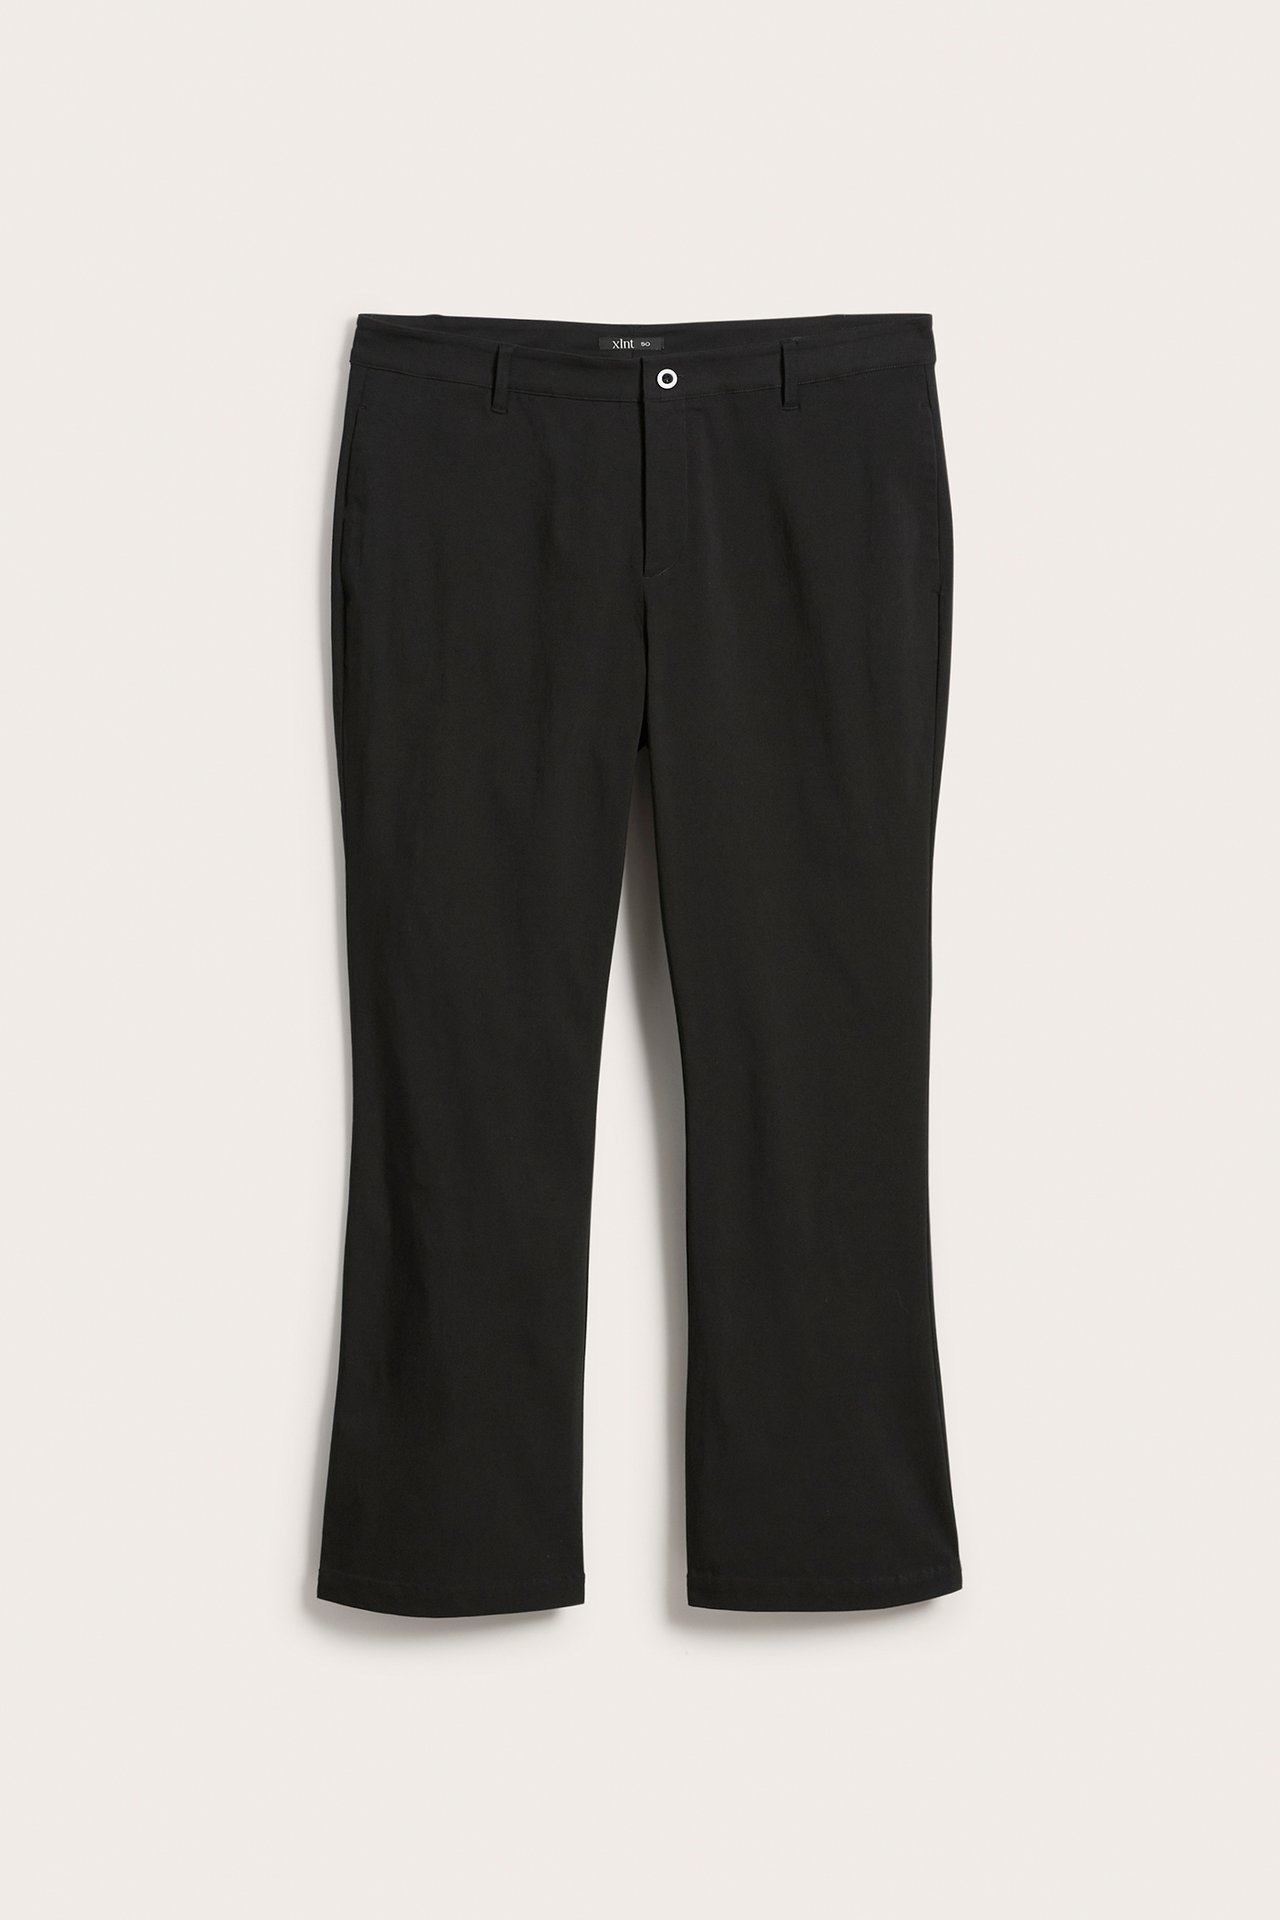 Spodnie garniturowe typu dzwony - Czarne - 6